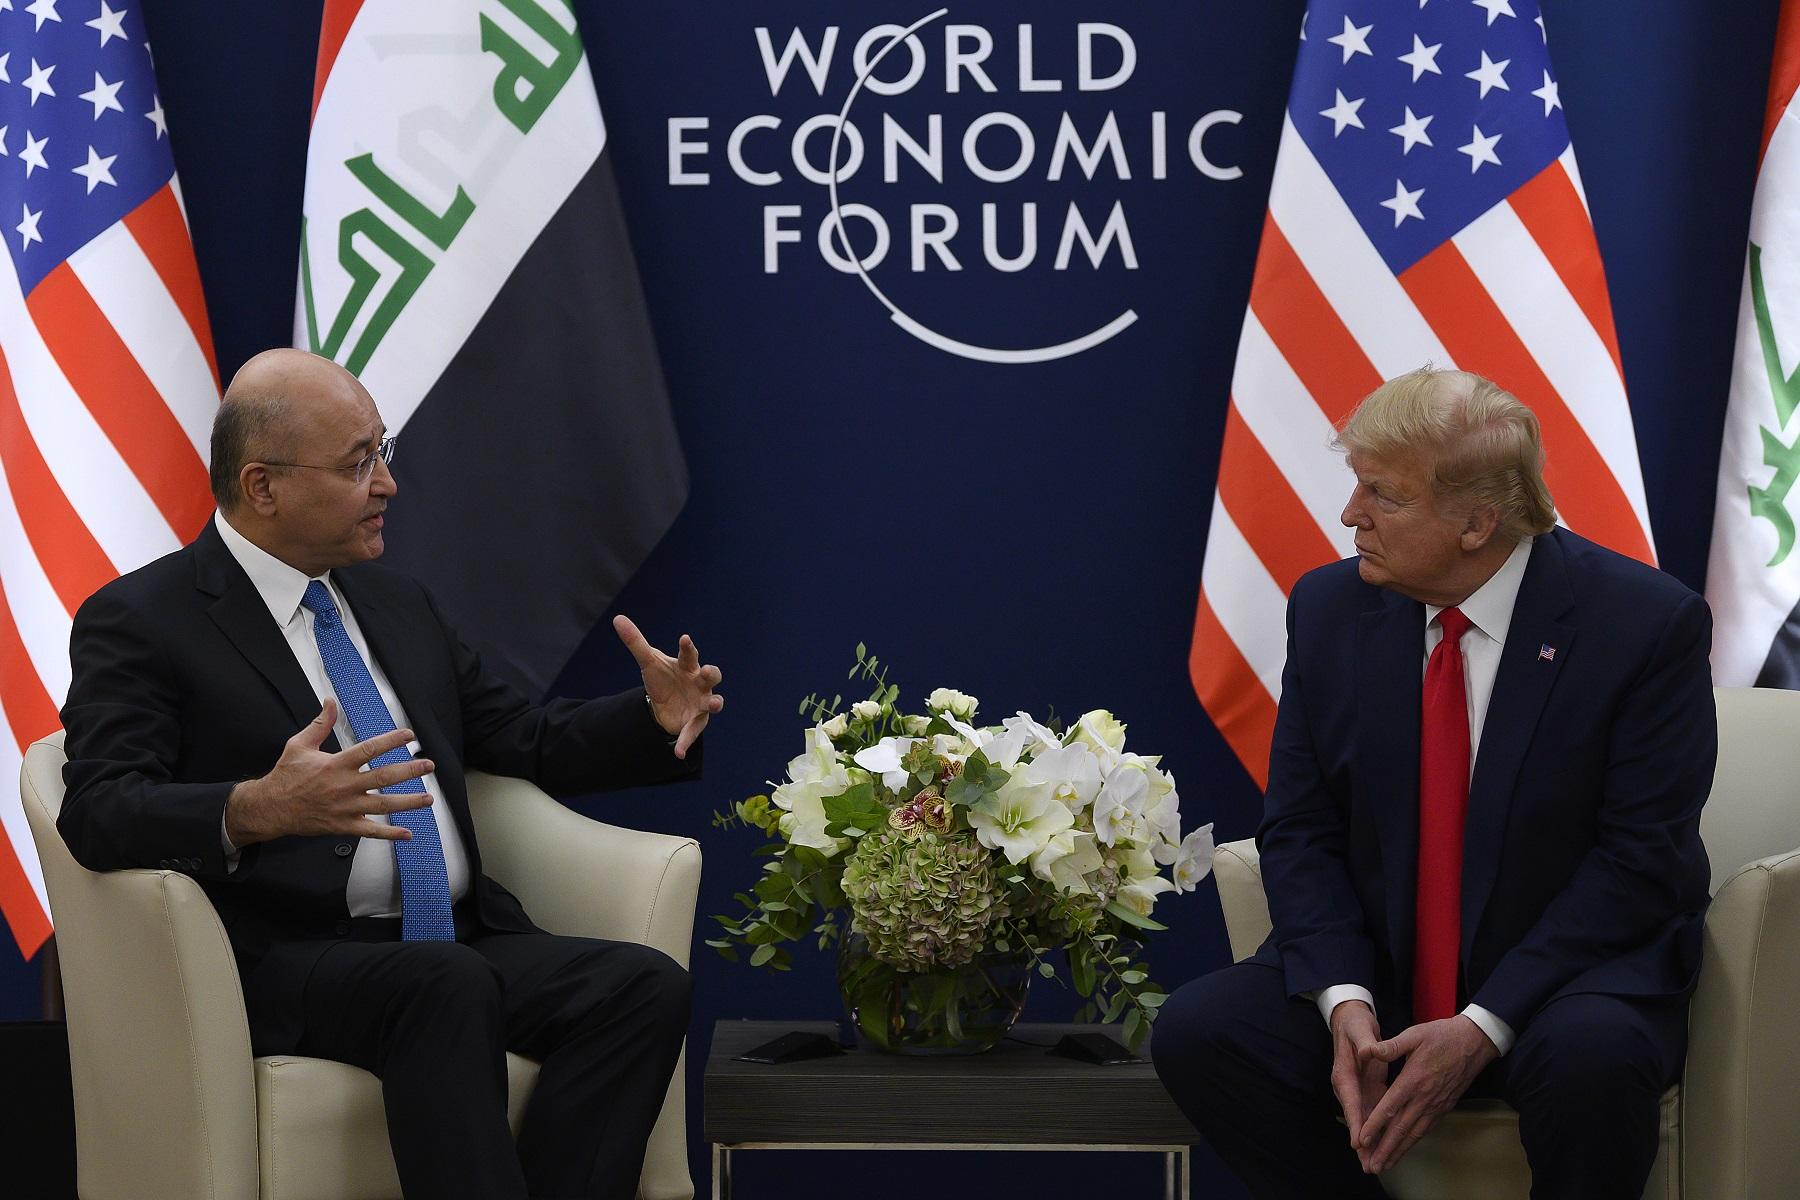 الرئيس الأميركي دونالد ترامب يتحدث إلى الرئيس العراقي برهم صالح خلال اجتماع في المنتدى الاقتصادي العالمي في دافوس. 22 يناير 2020. (أ ف ب)